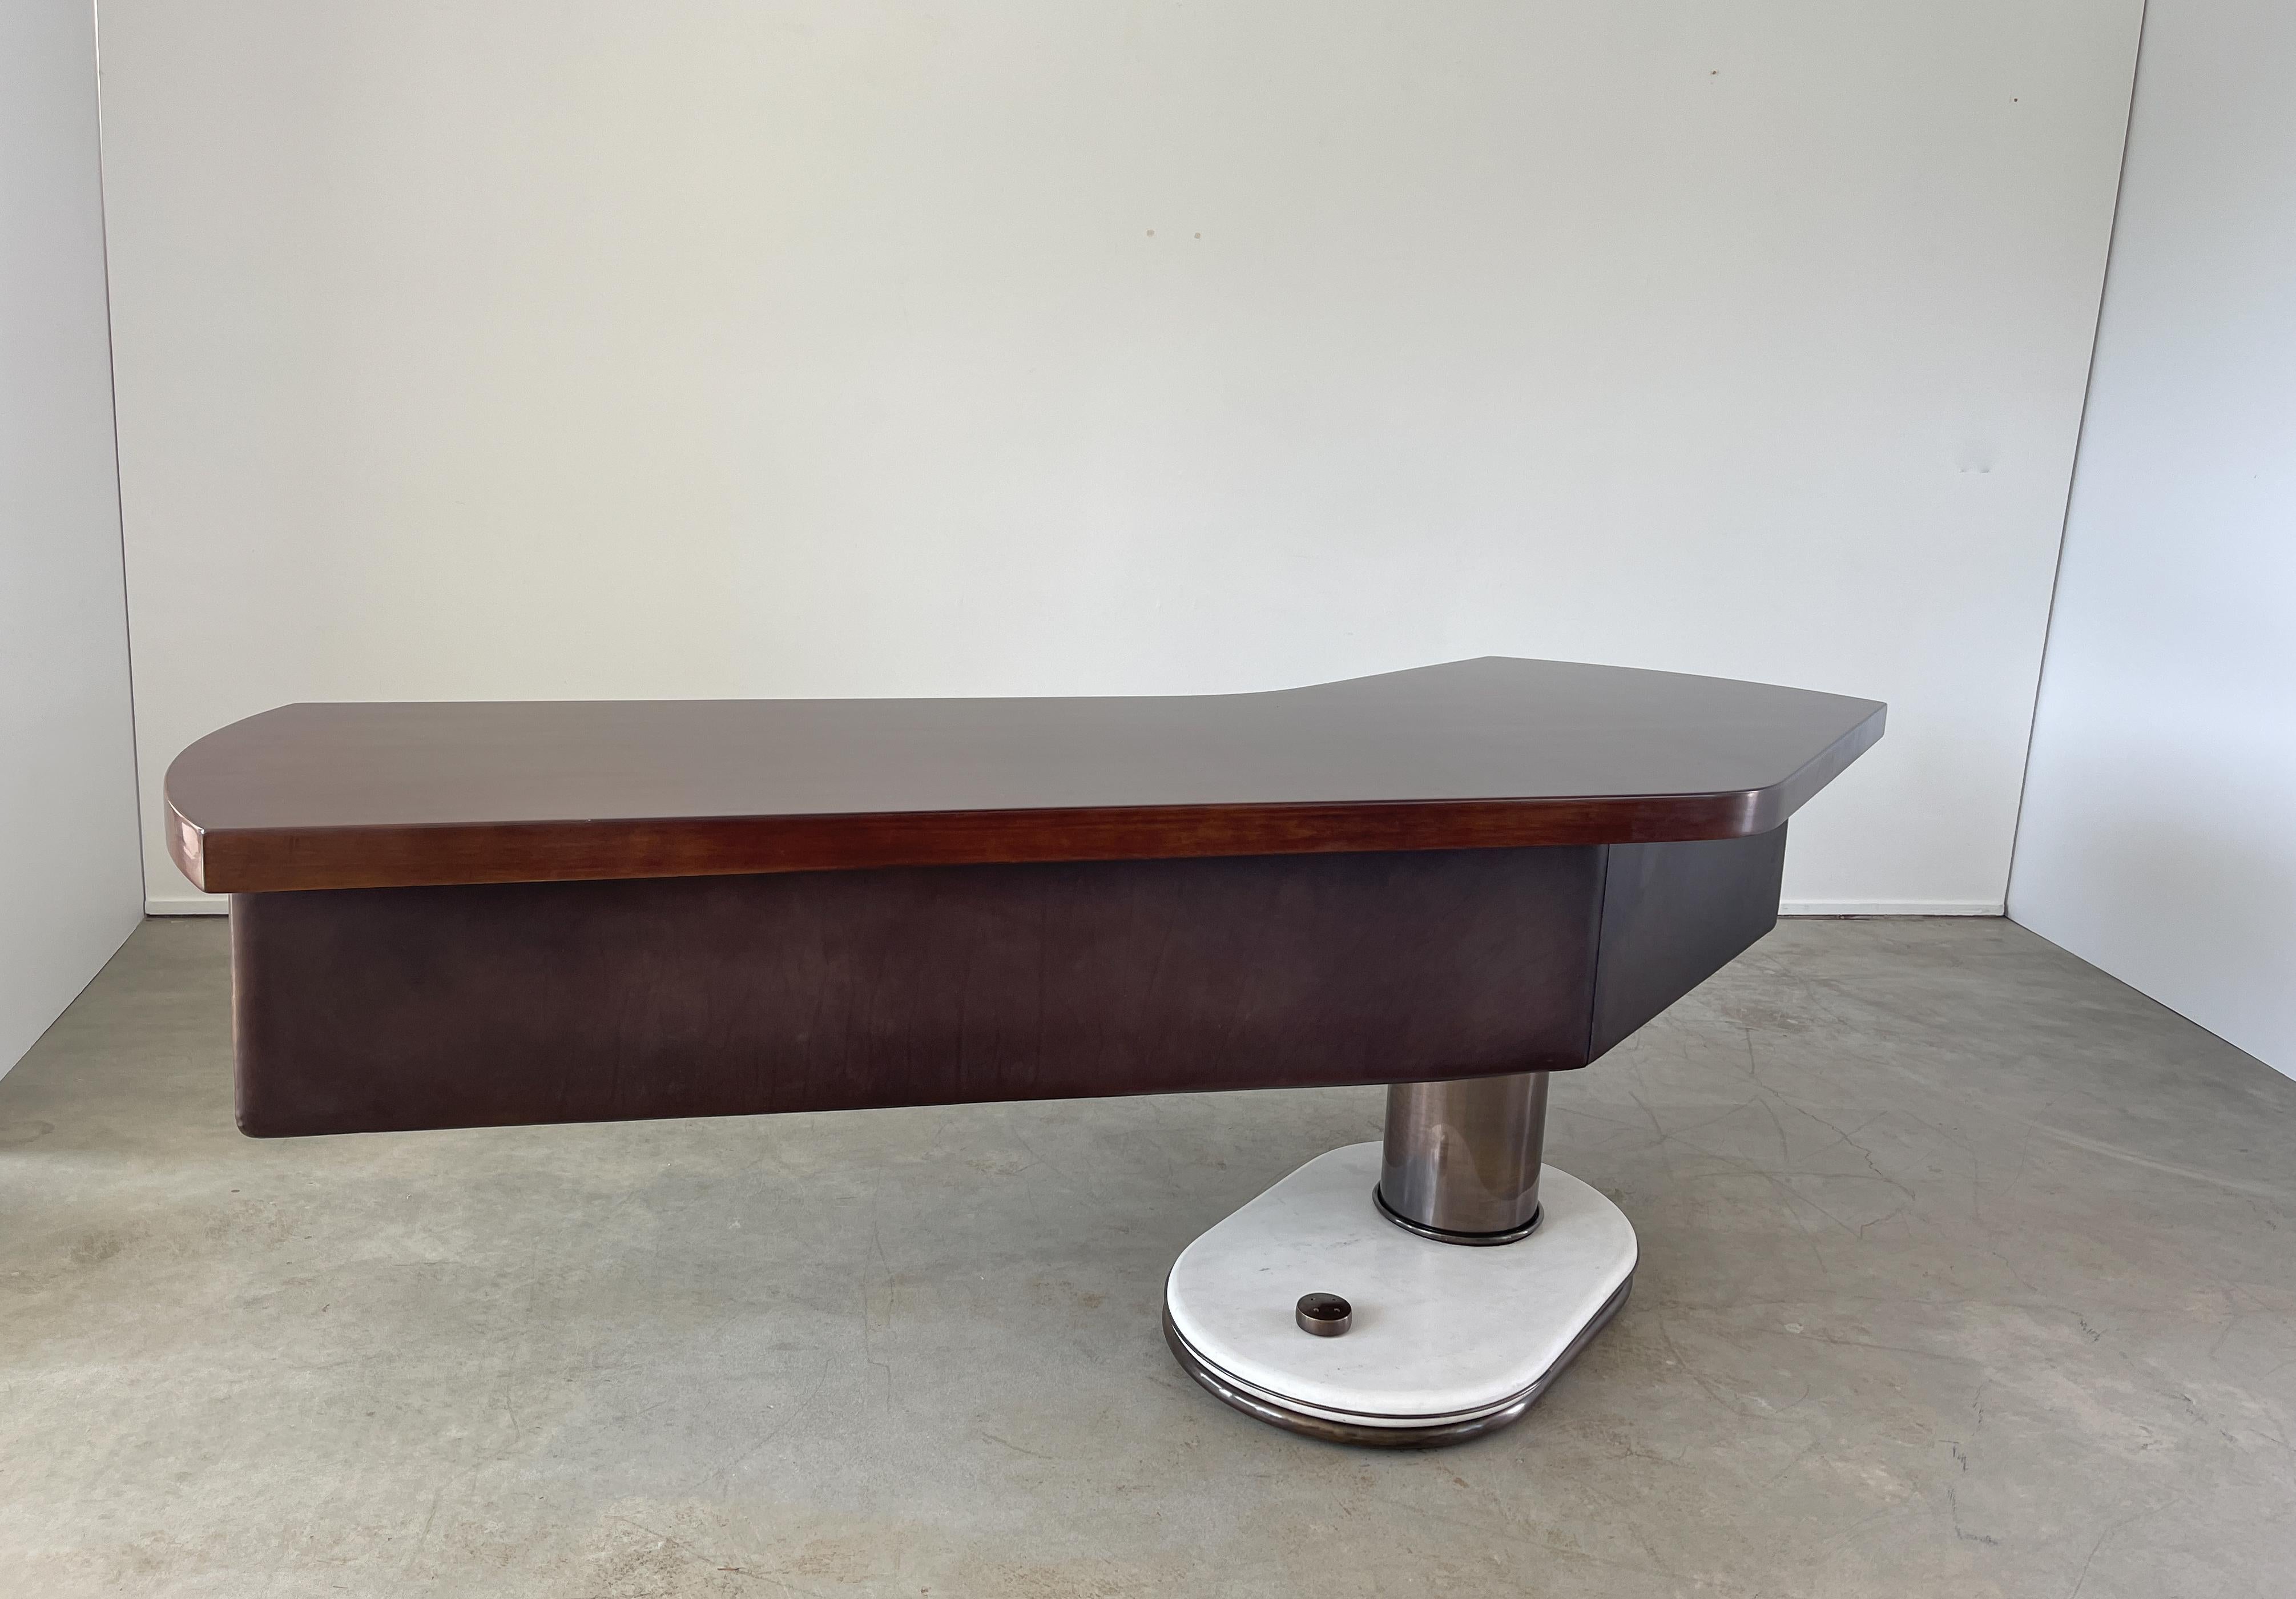 Schirolli-Schreibtisch von Renzo Schirolli (Bronze)